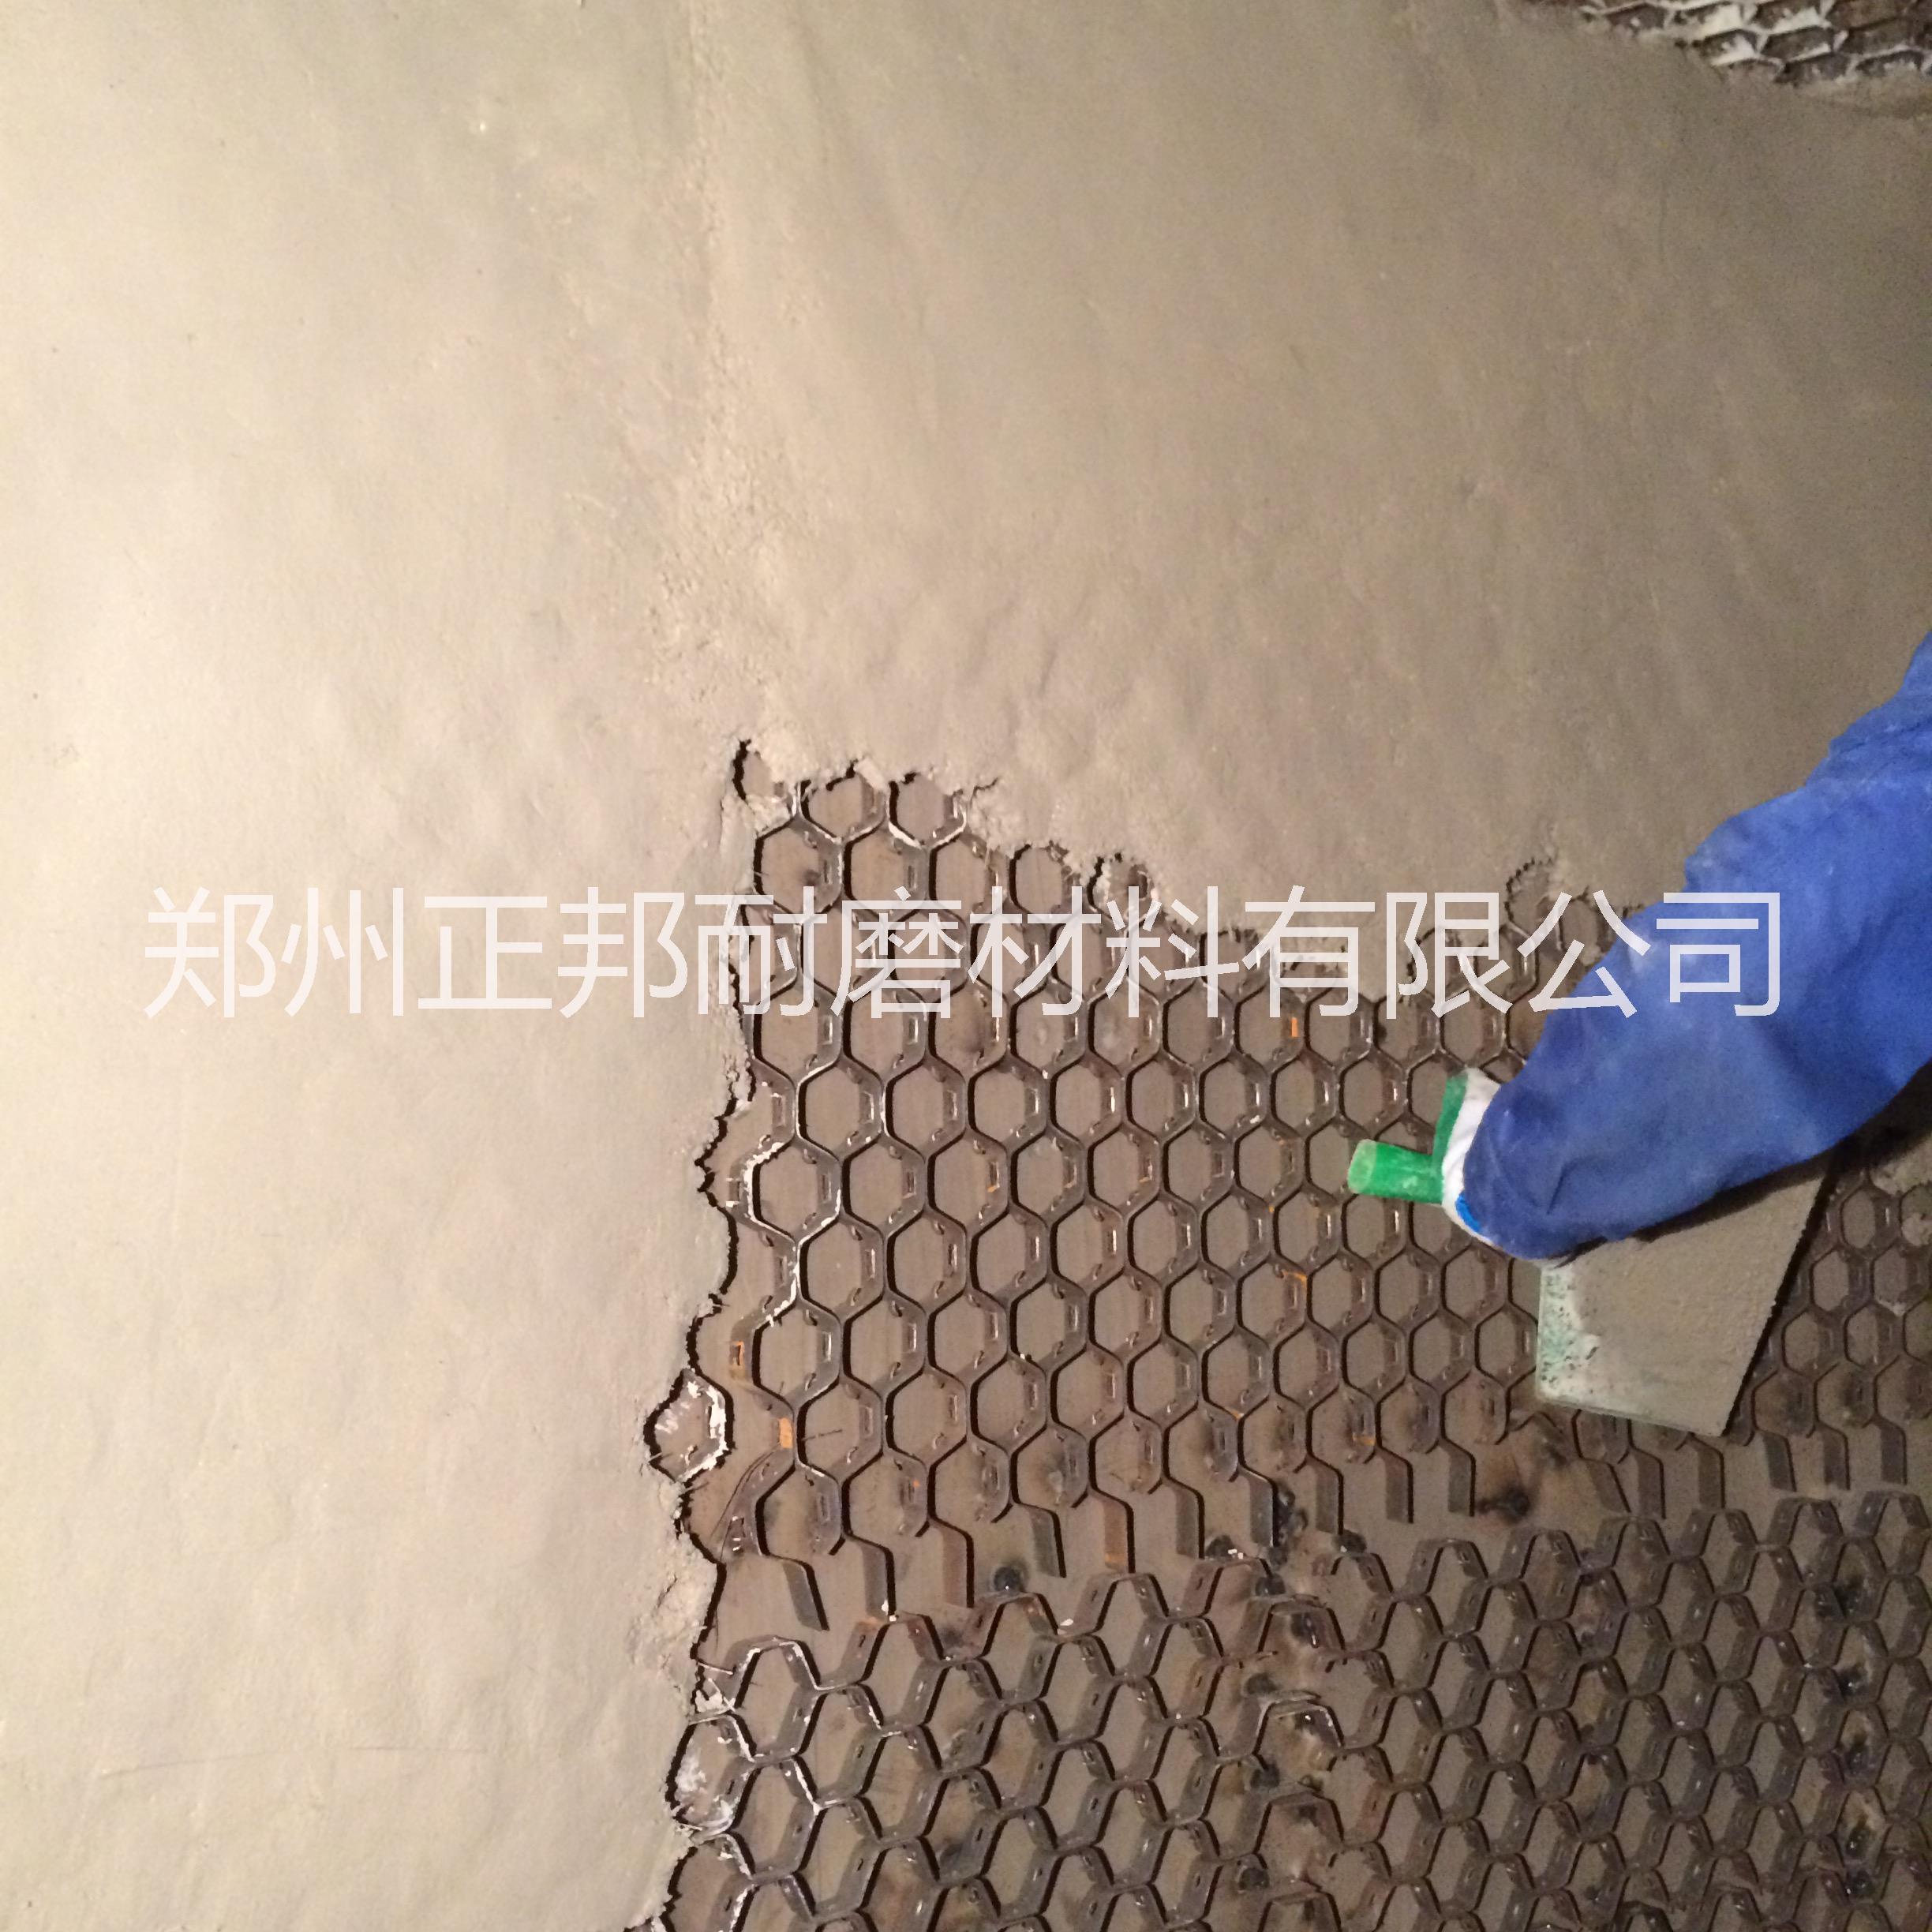 龟甲网耐磨涂料 龟甲网耐磨胶泥 龟甲网耐磨涂料 龟甲网防磨胶泥